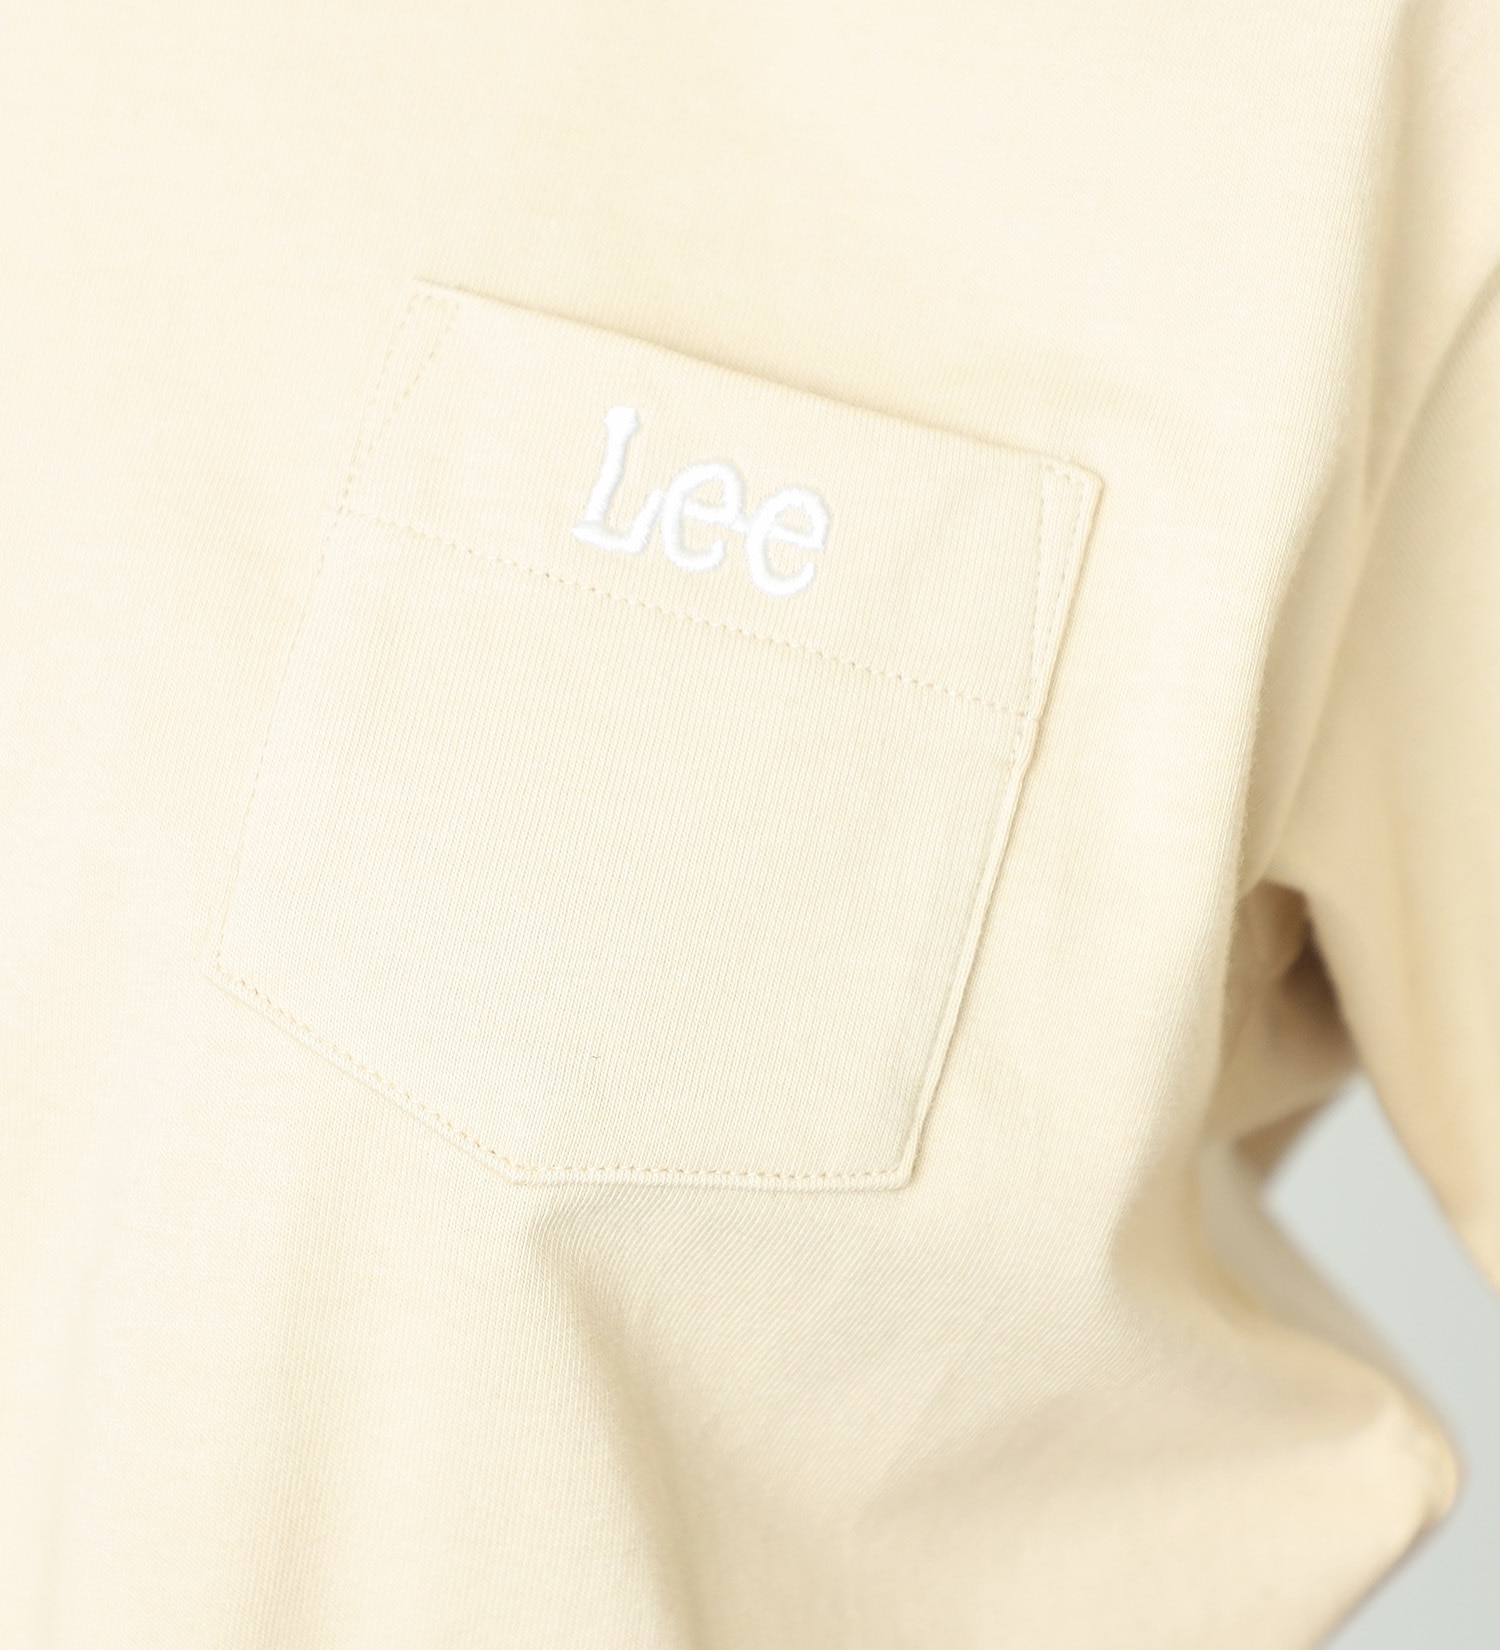 Lee(リー)のポケットハーフスリーブTシャツ|トップス/Tシャツ/カットソー/レディース|ベージュ